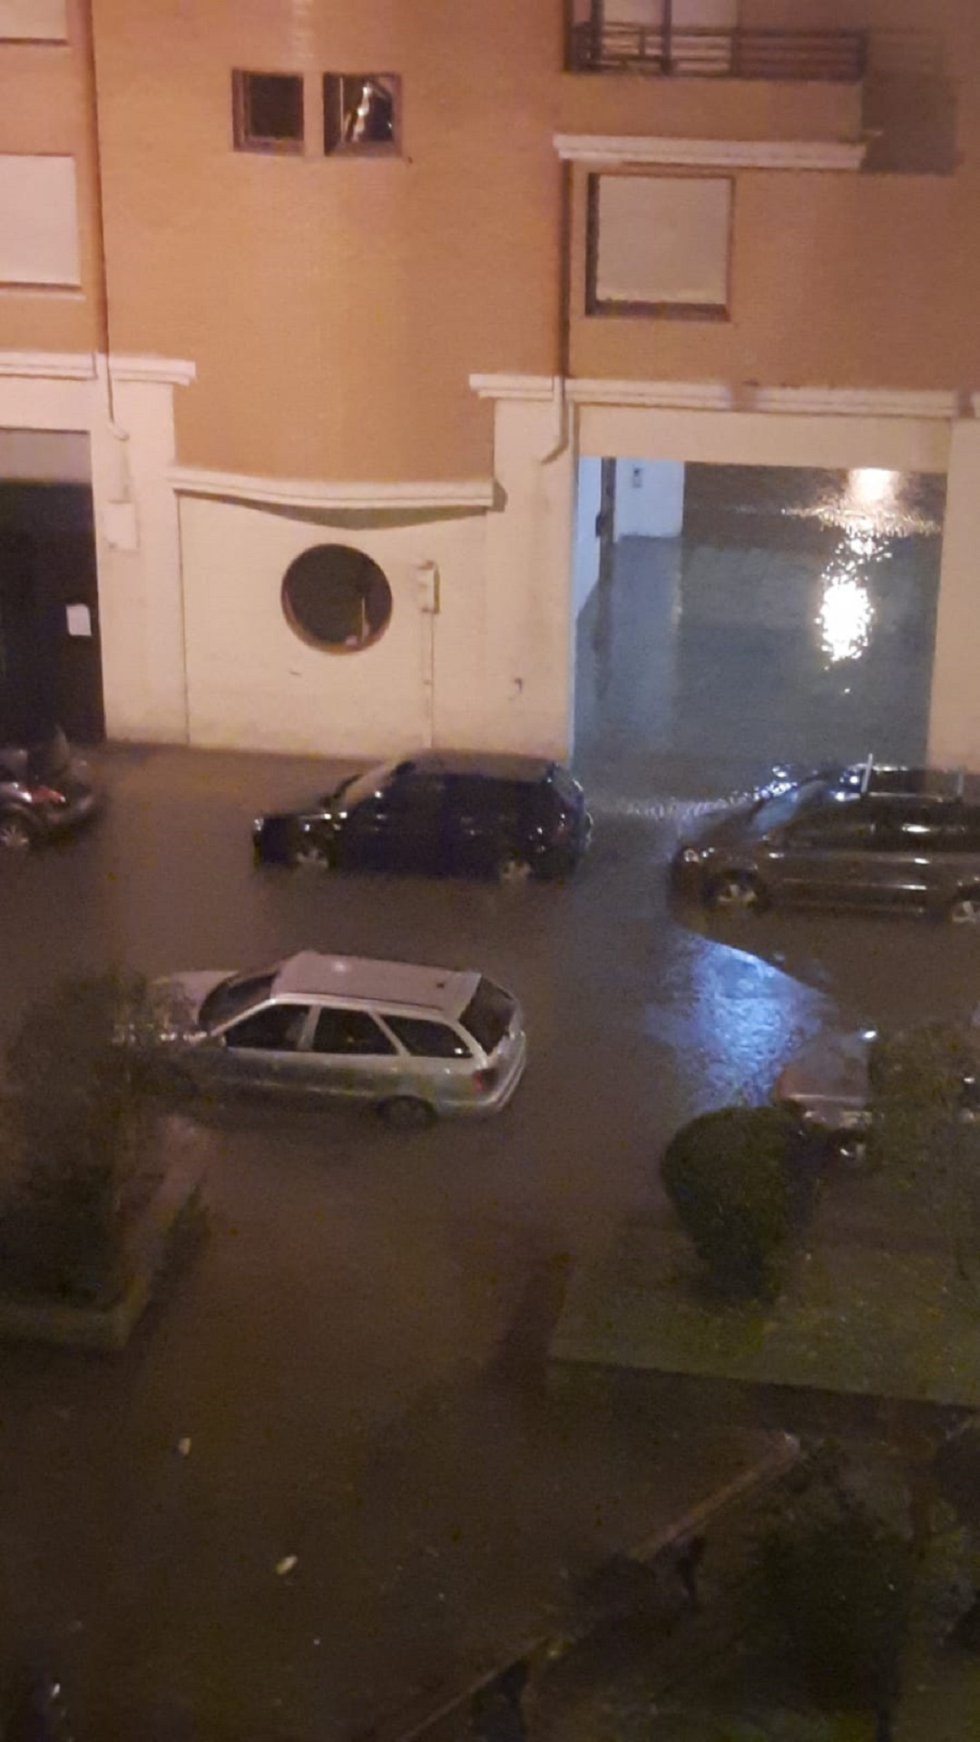 Inundaciones en Bizkaia: Coches sumergidos, bajos inundados,... las imágenes que deja la riada